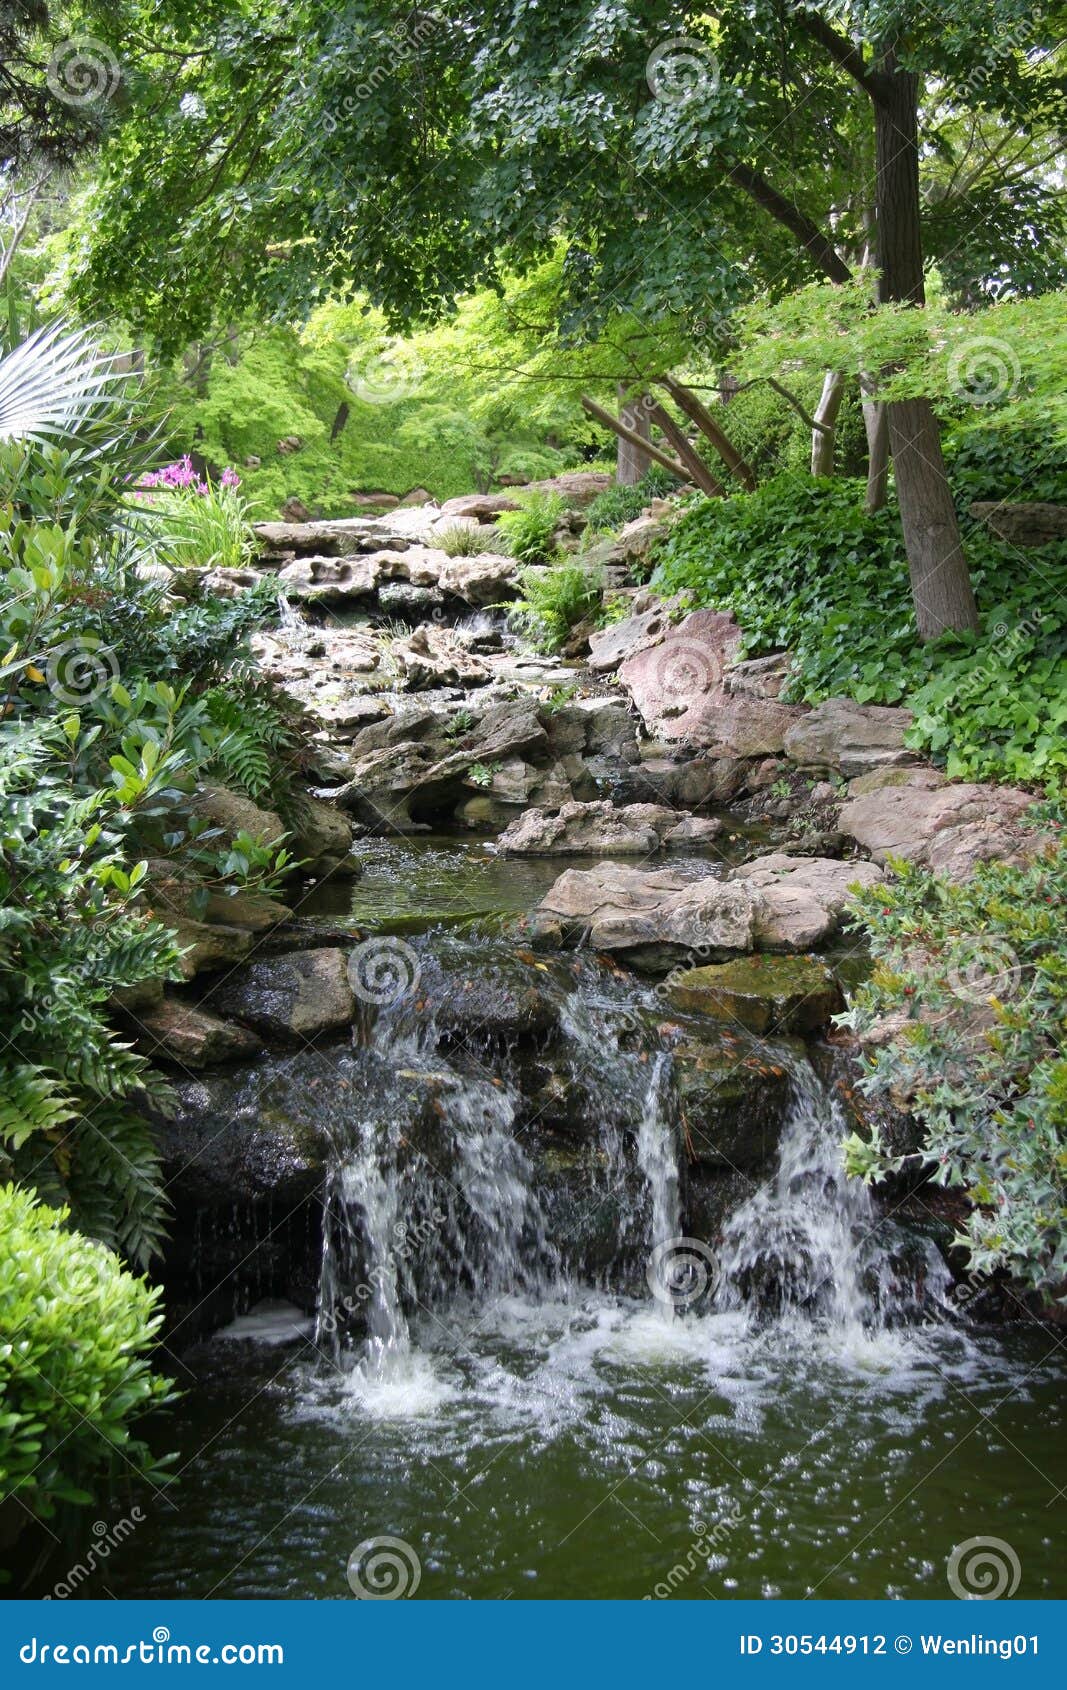 Japanese Garden Waterfall View Stock Photo Image Of Gardening